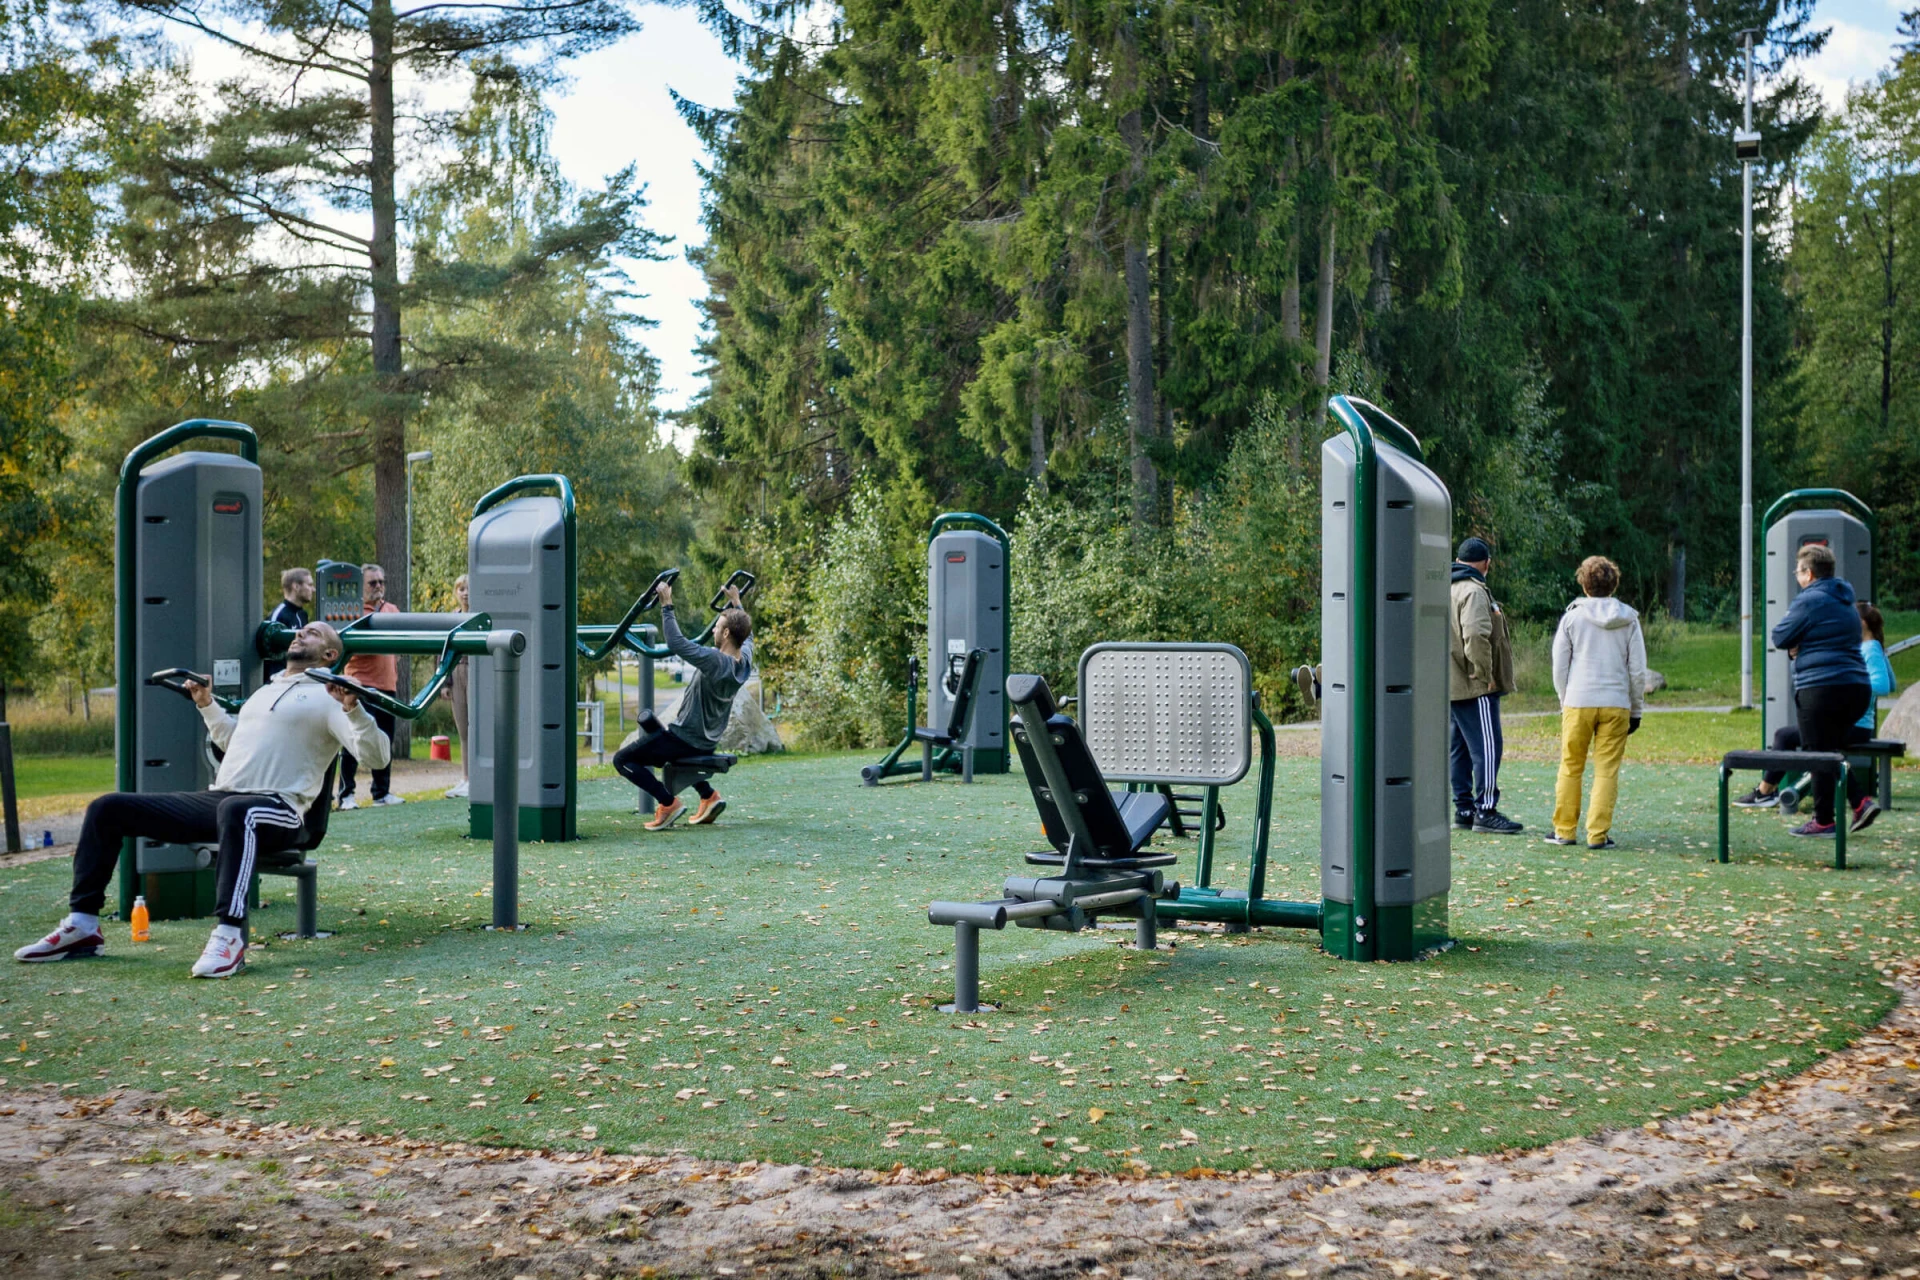 ihmisiä treenaamassa voimaharjoittelulaitteilla ulkona Kypegårdenissa, Ruotsi